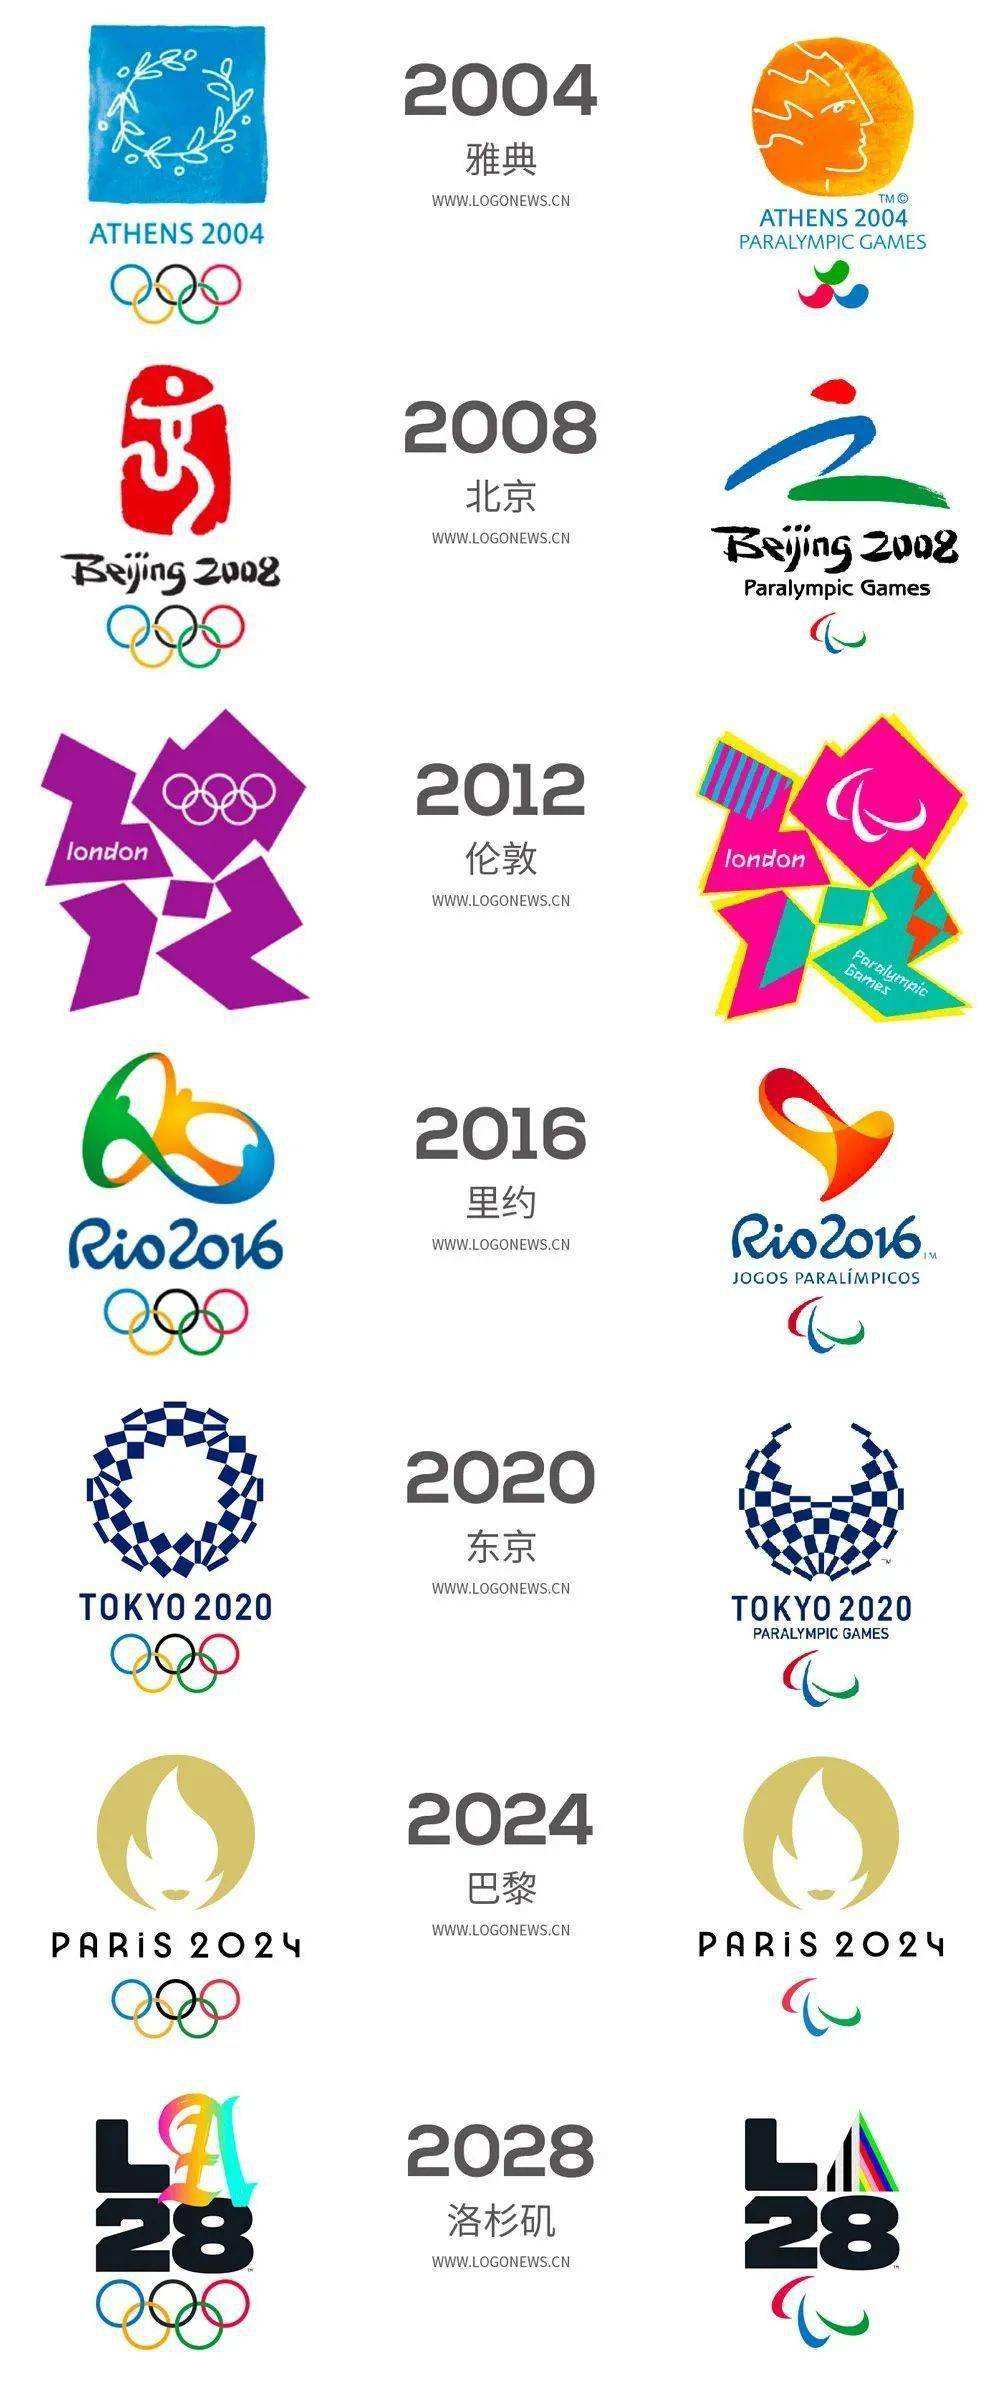 2028年奥运会举办国，2028年奥运会举办城市？